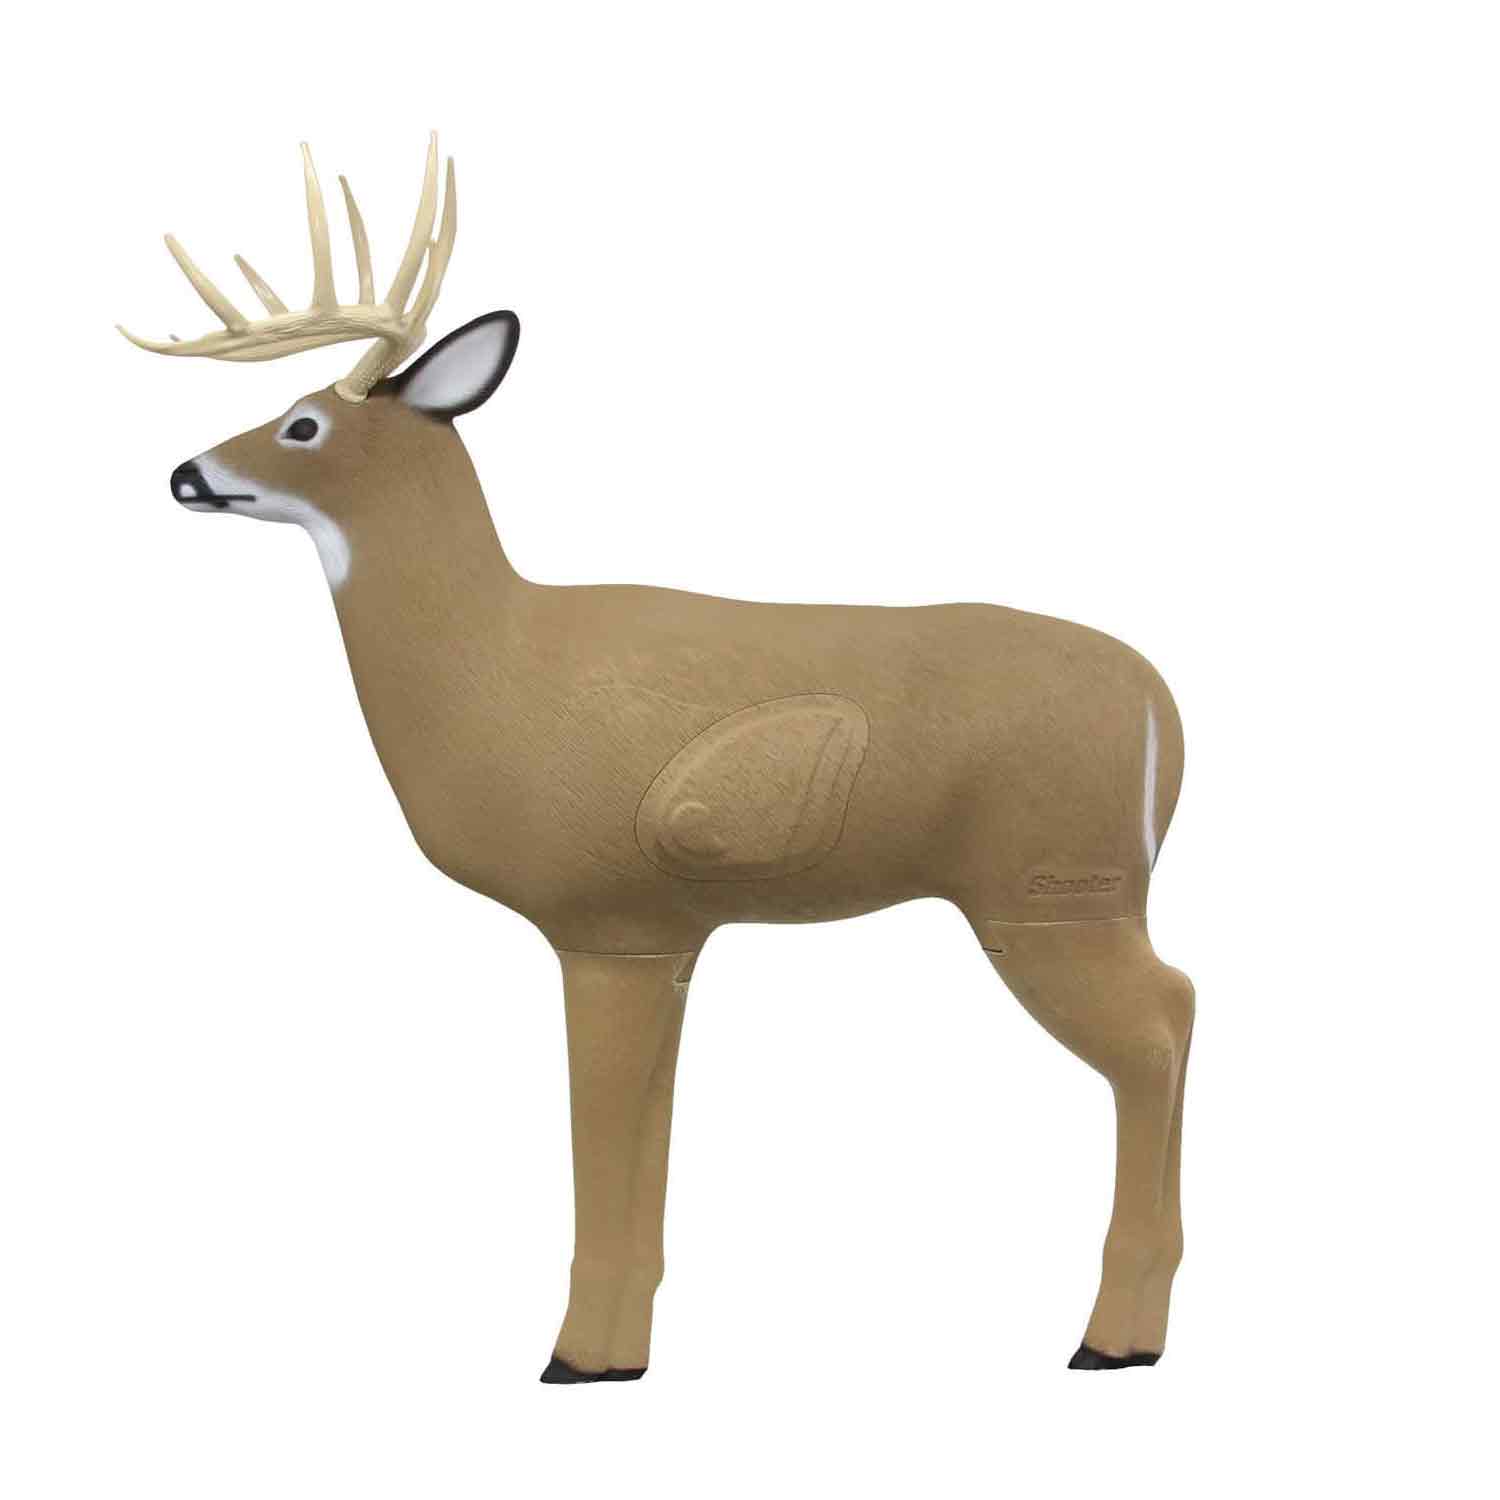 Shooter Big Shooter Buck 3D Deer Archery Target